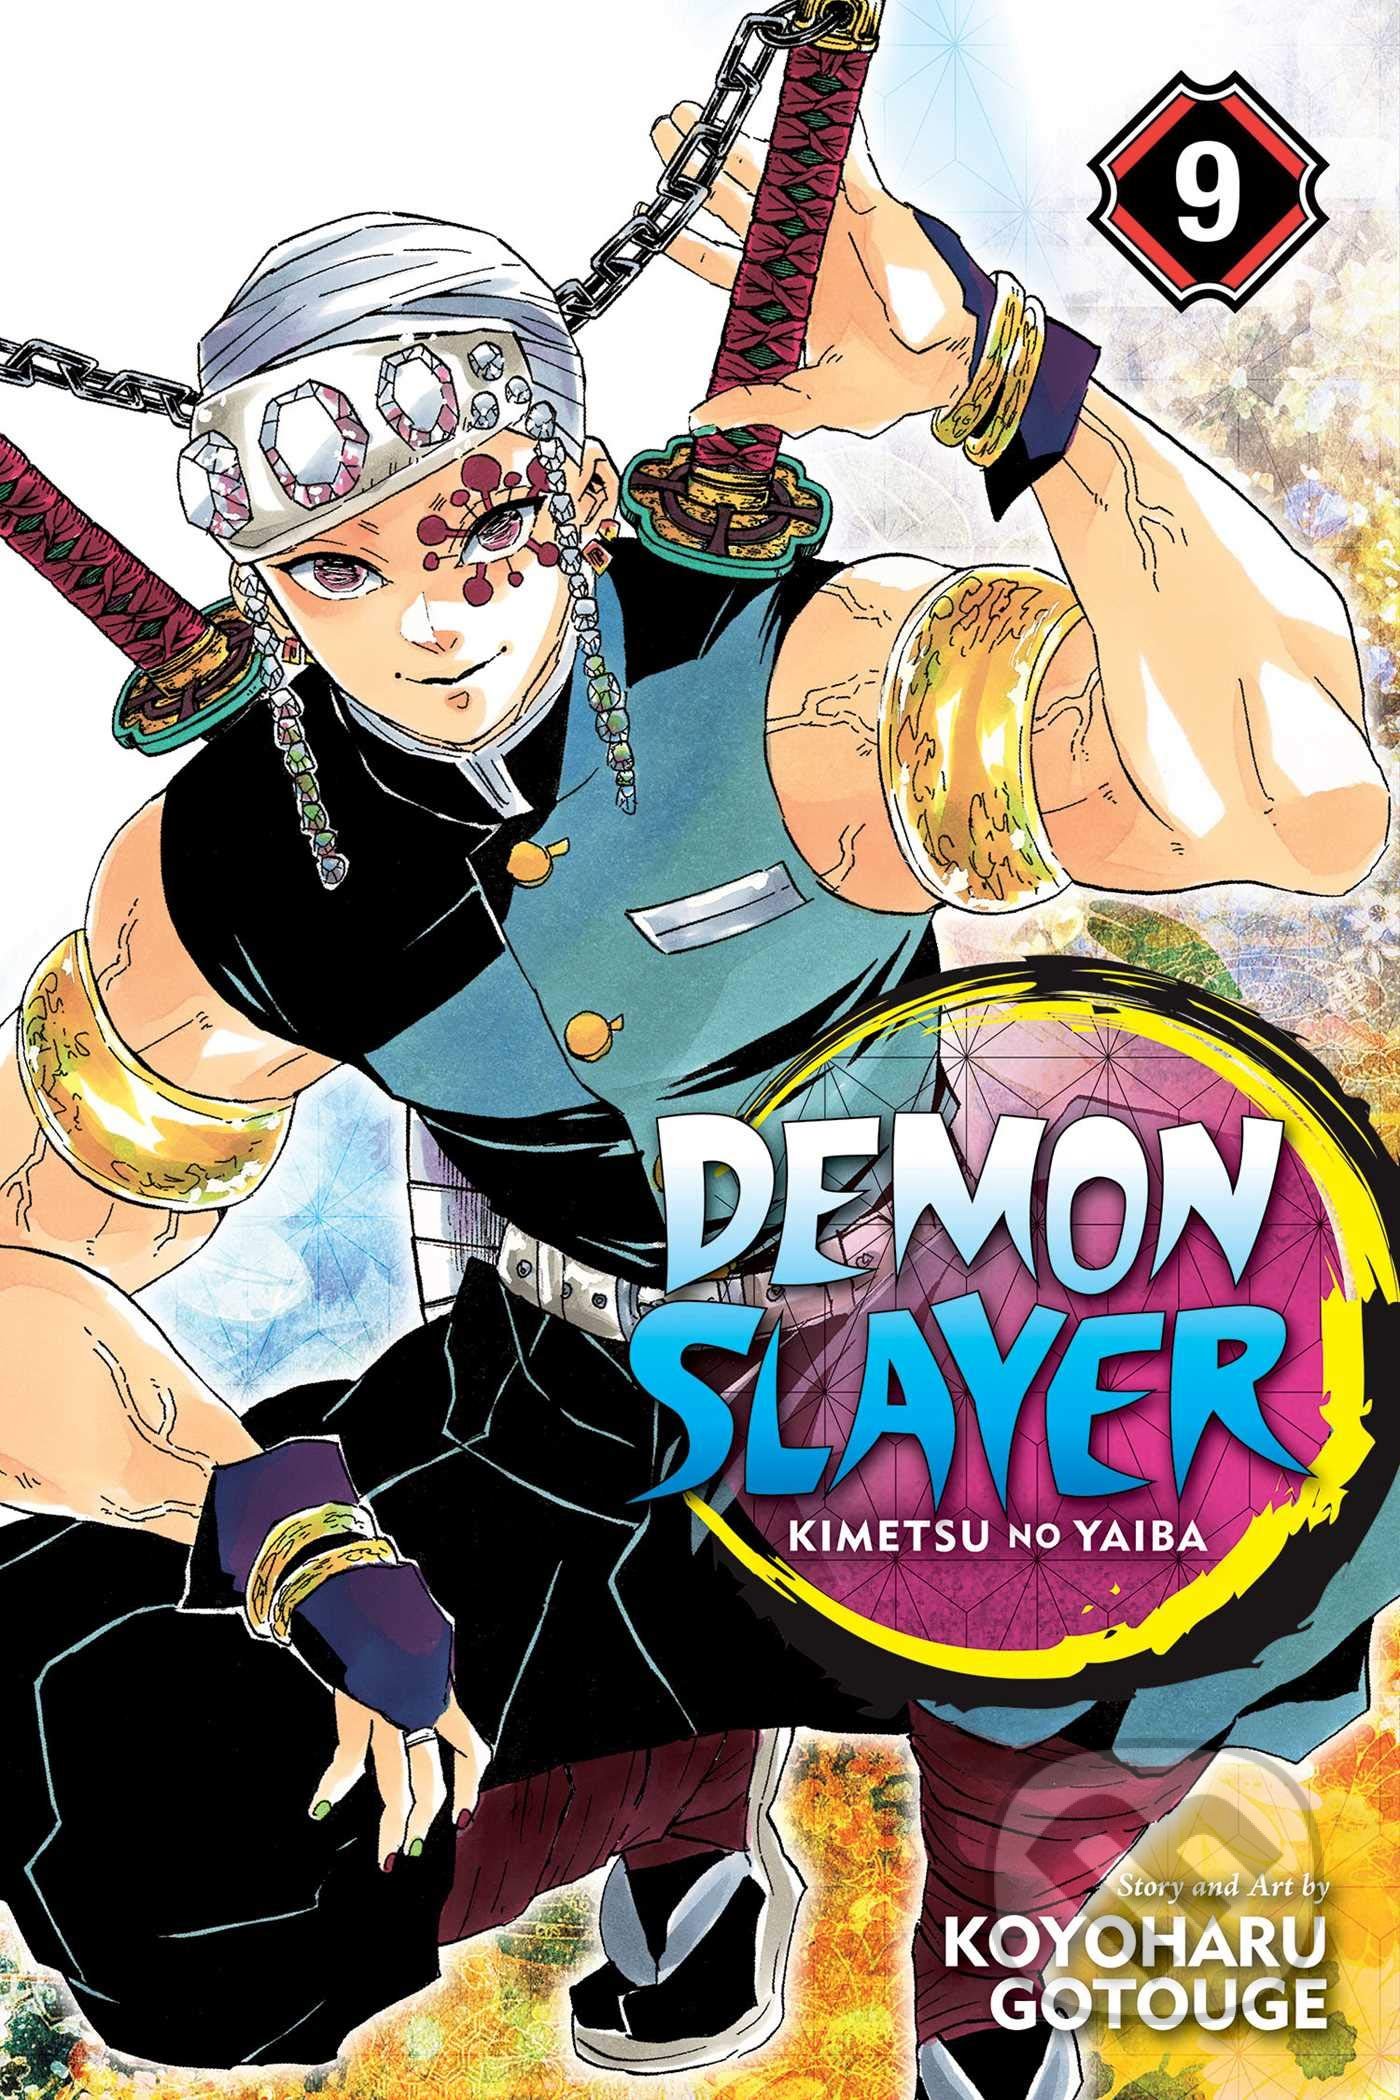 Demon Slayer: Kimetsu no Yaiba (Volume 9) - Koyoharu Gotouge, Viz Media, 2019